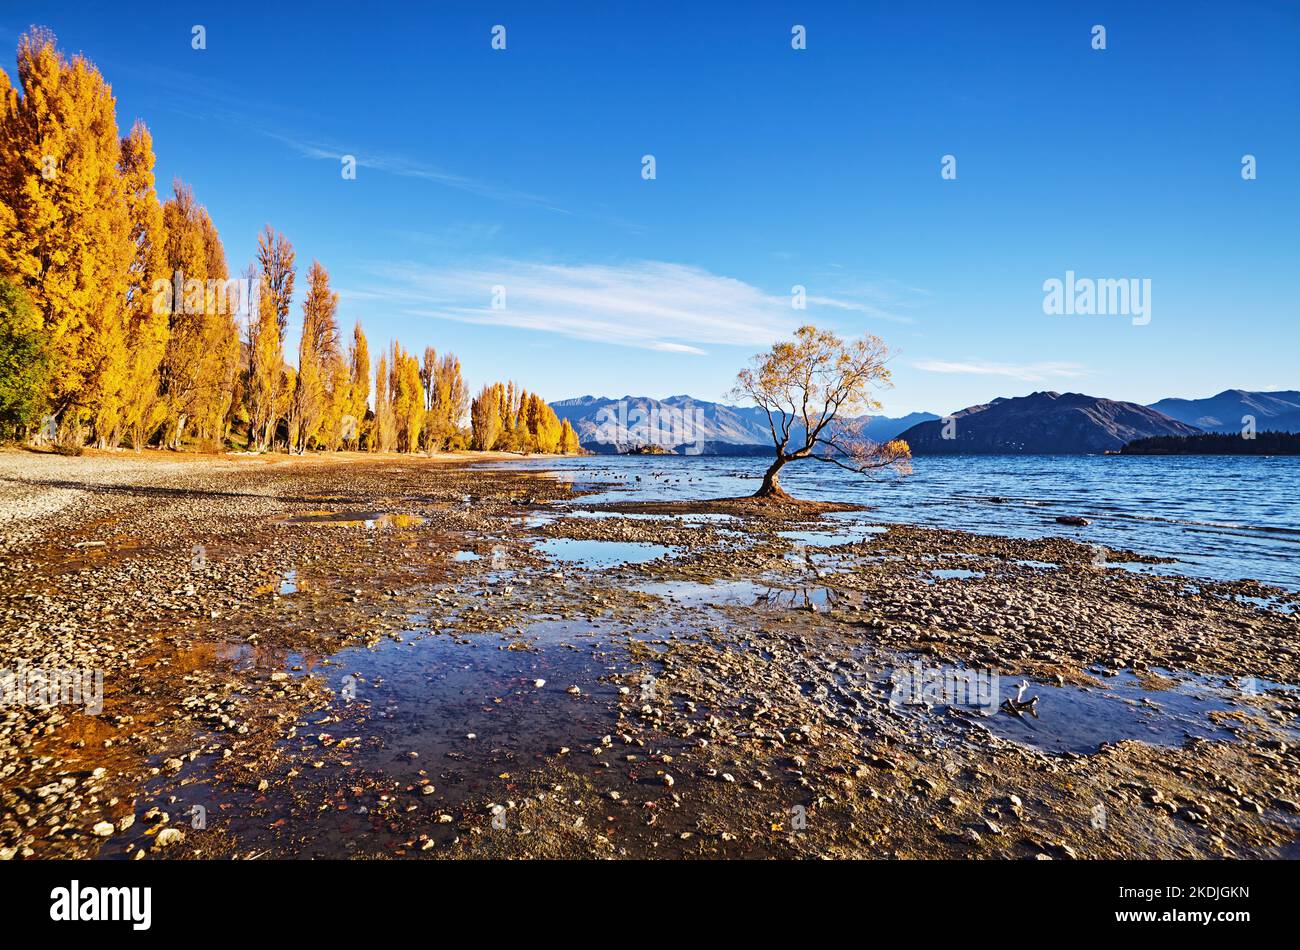 Paysage d'automne, lac Wanaka, Nouvelle-Zélande. Arbre solitaire à faible niveau d'eau Banque D'Images